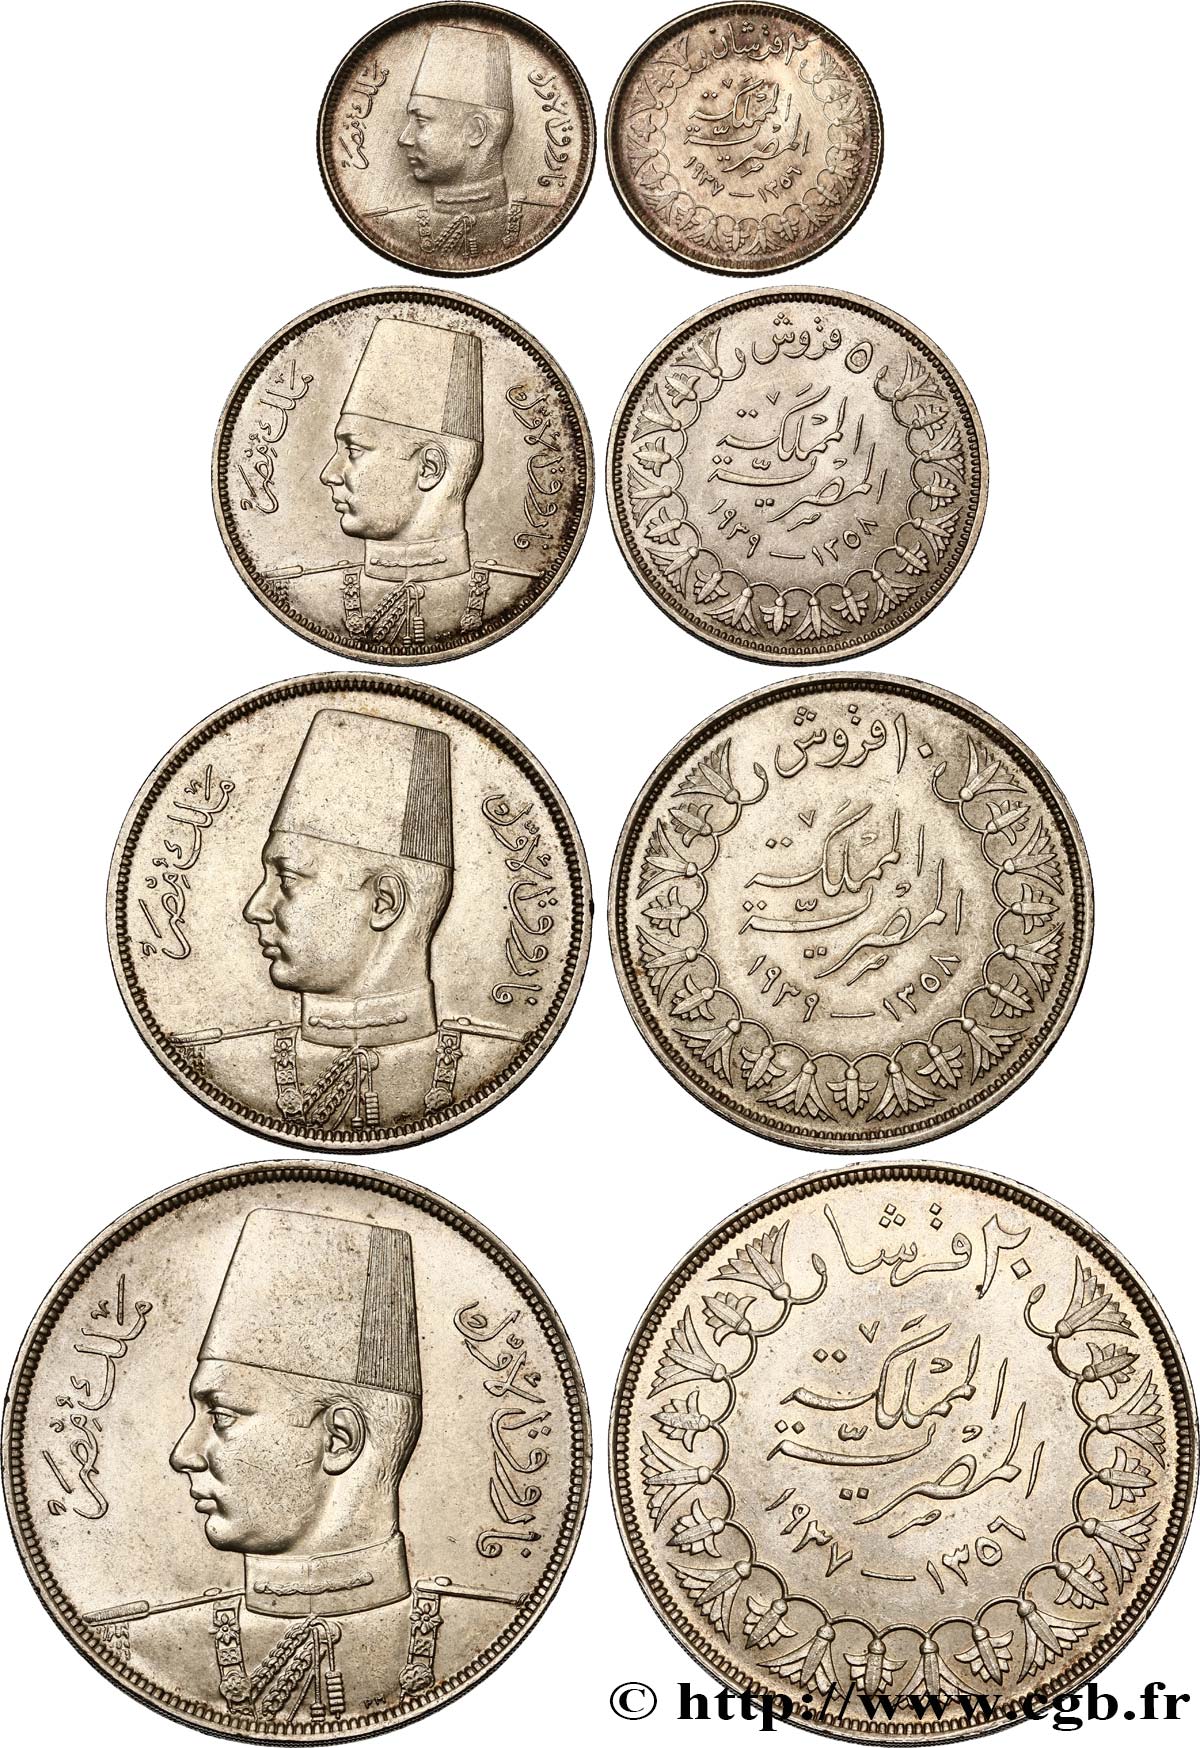 EGYPT - KINGDOM OF EGYPT - FAROUK Série de quatre pièces n.d.  AU 